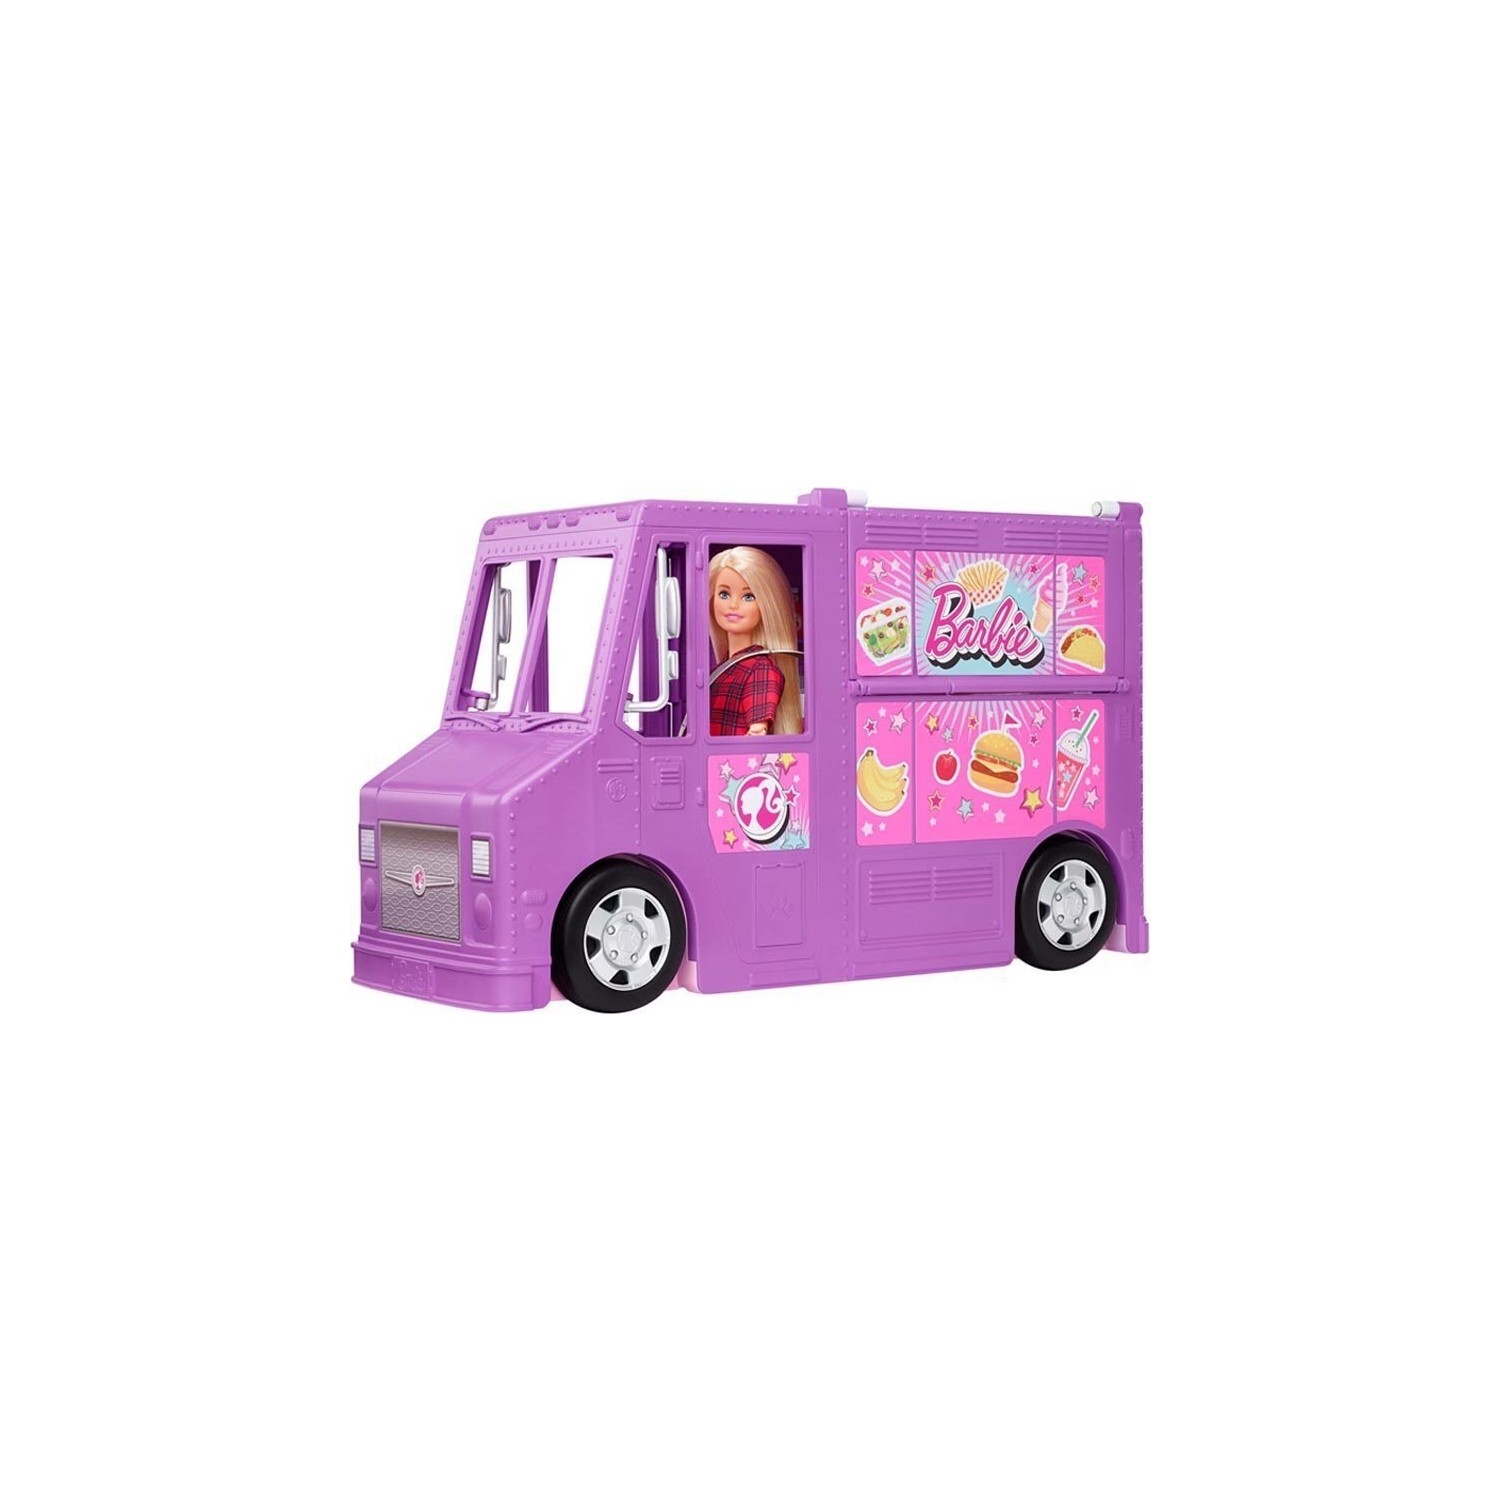 Игровой набор Barbie's Food Car набор barbie виртуальный мир автомобиль с мини куклой 10 см dtw18